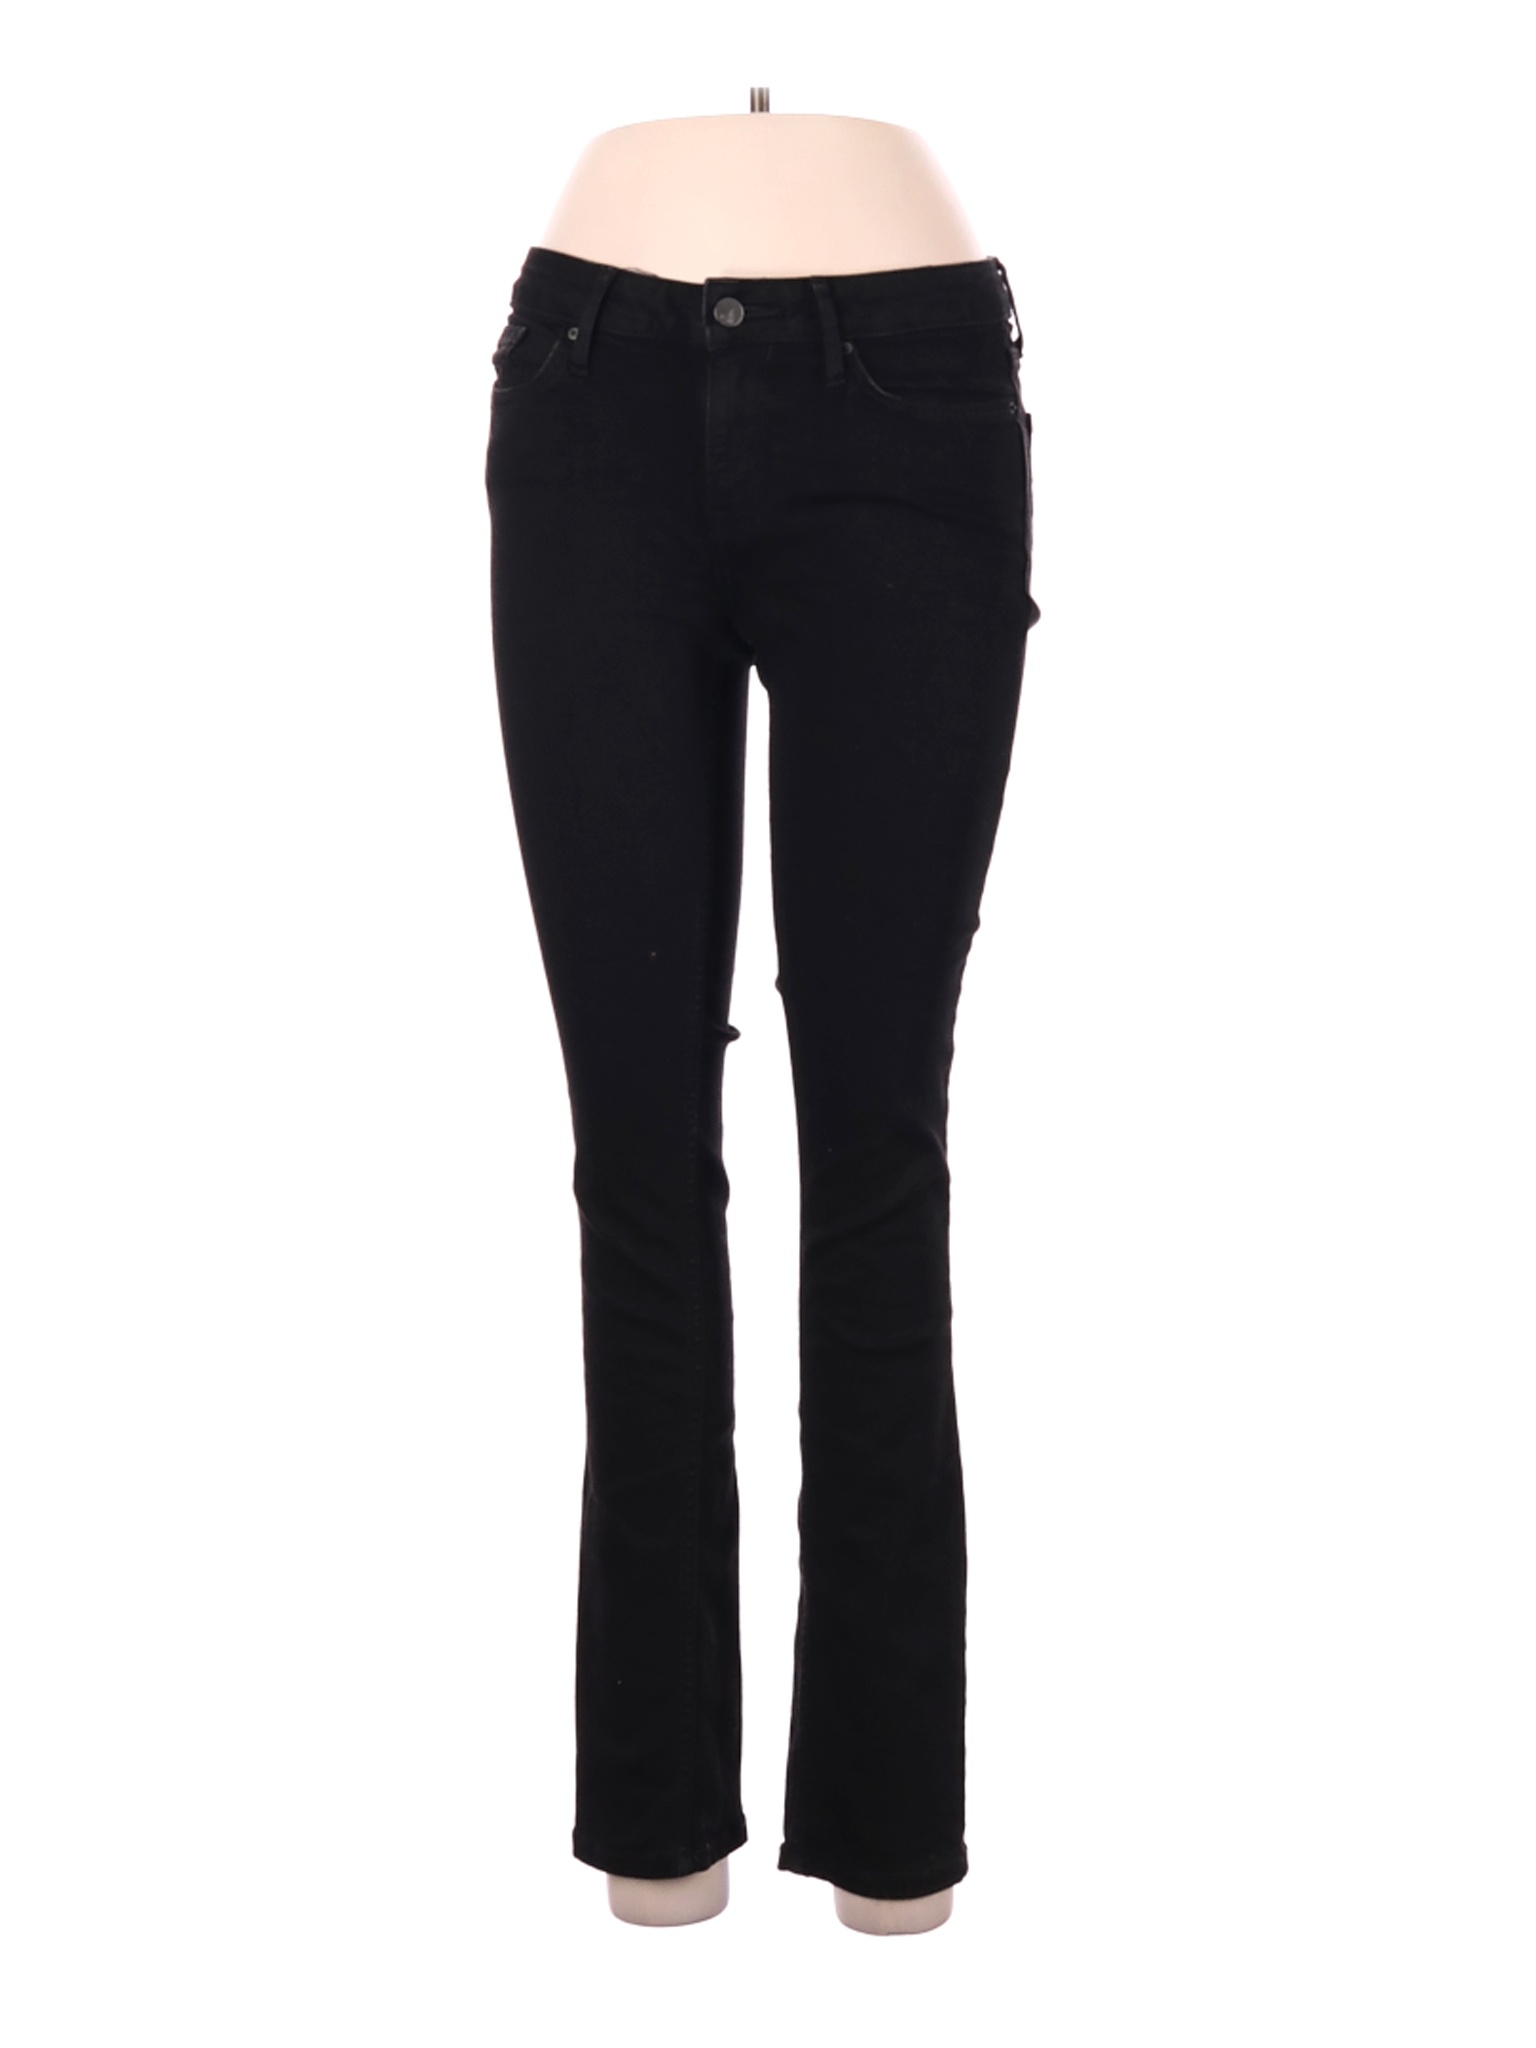 CALVIN KLEIN JEANS Women Black Jeans 30W | eBay